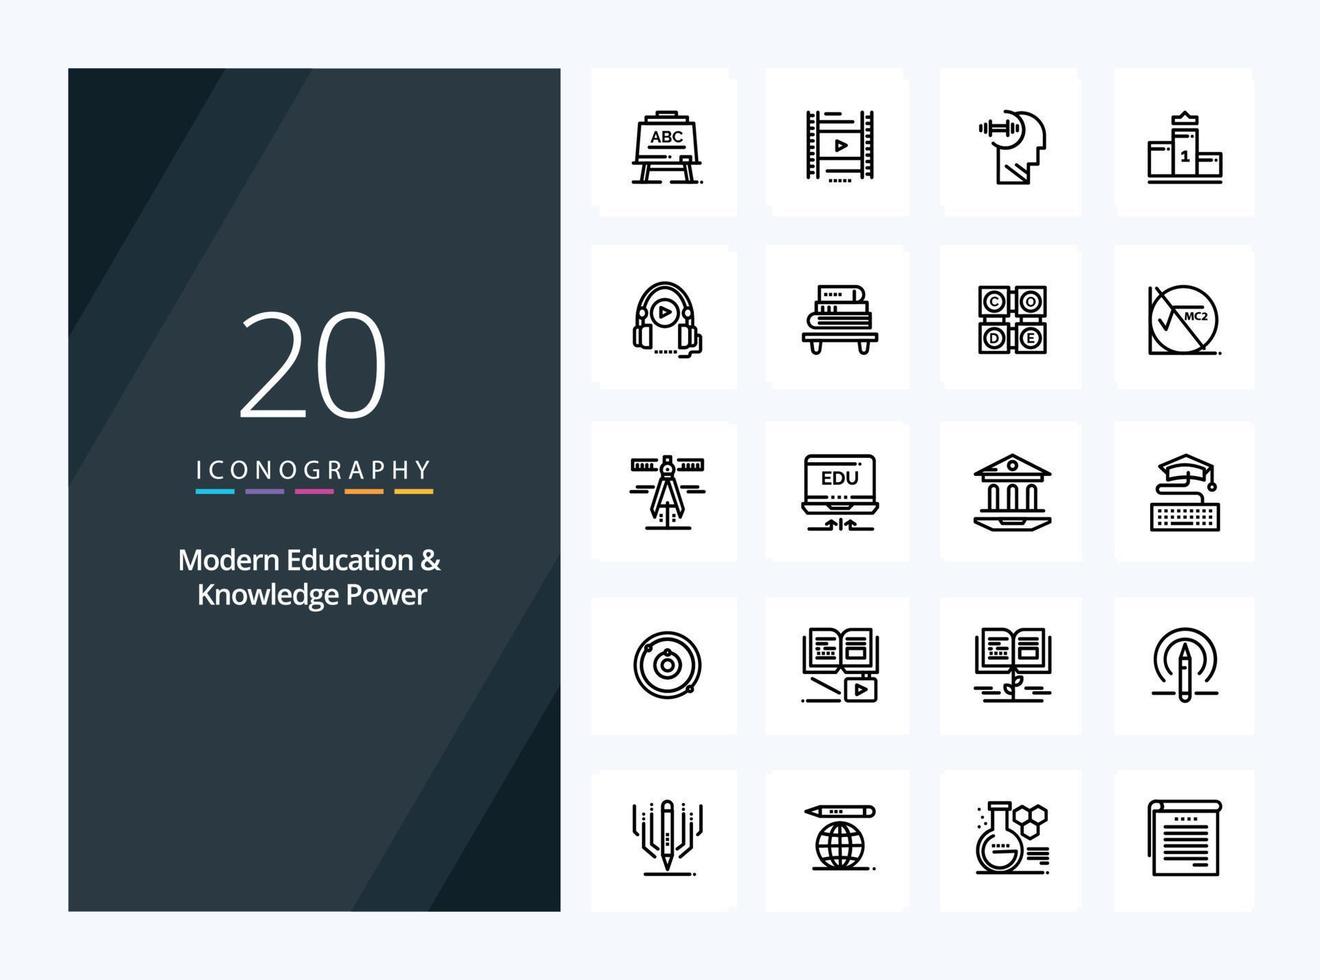 20 modern utbildning och kunskap kraft översikt ikon för presentation vektor